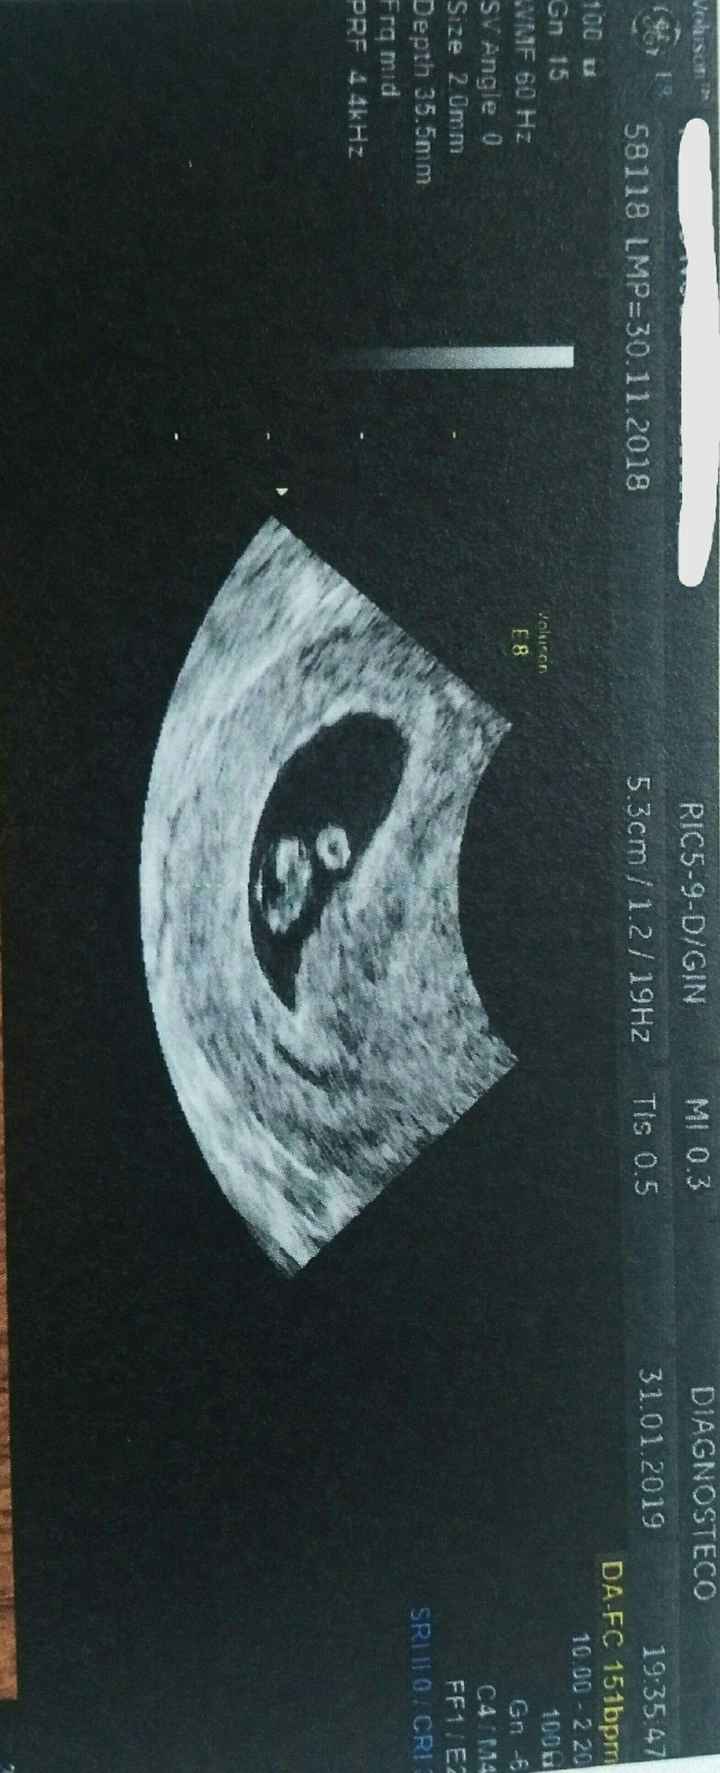 Esta es otra foto mismo embrion